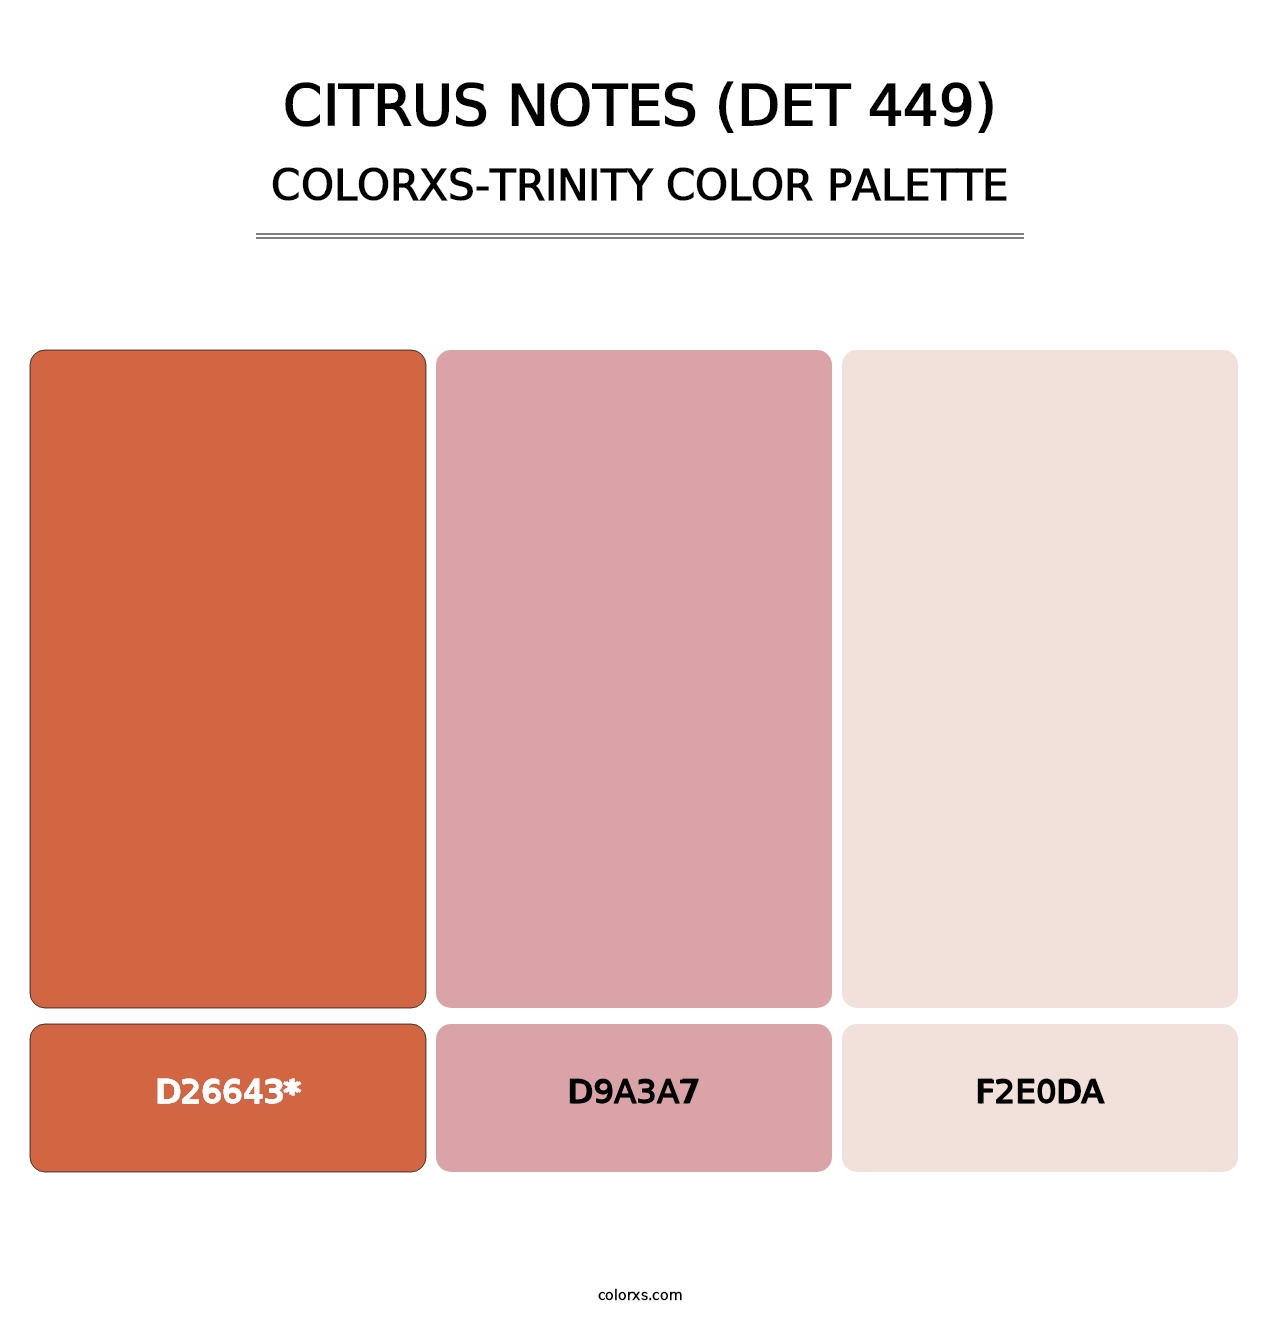 Citrus Notes (DET 449) - Colorxs Trinity Palette